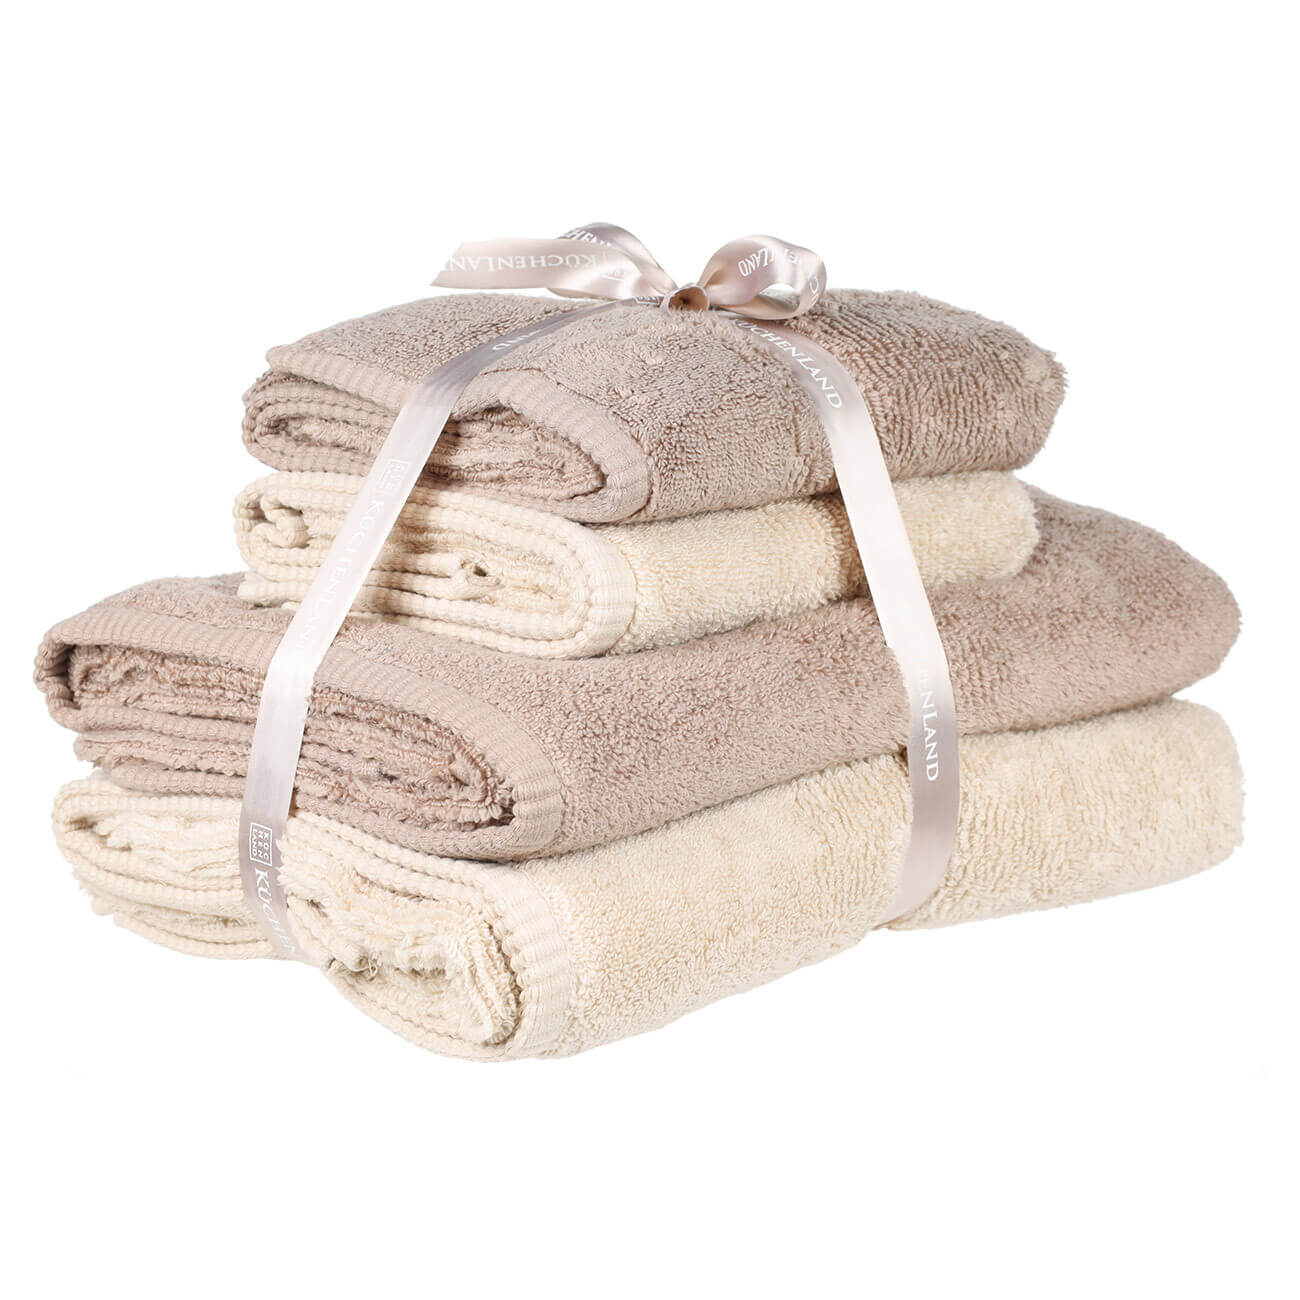 Towel set, 50x90 / 70x140 cm, 4 pcs, cotton, brown / beige, Terry cotton изображение № 1